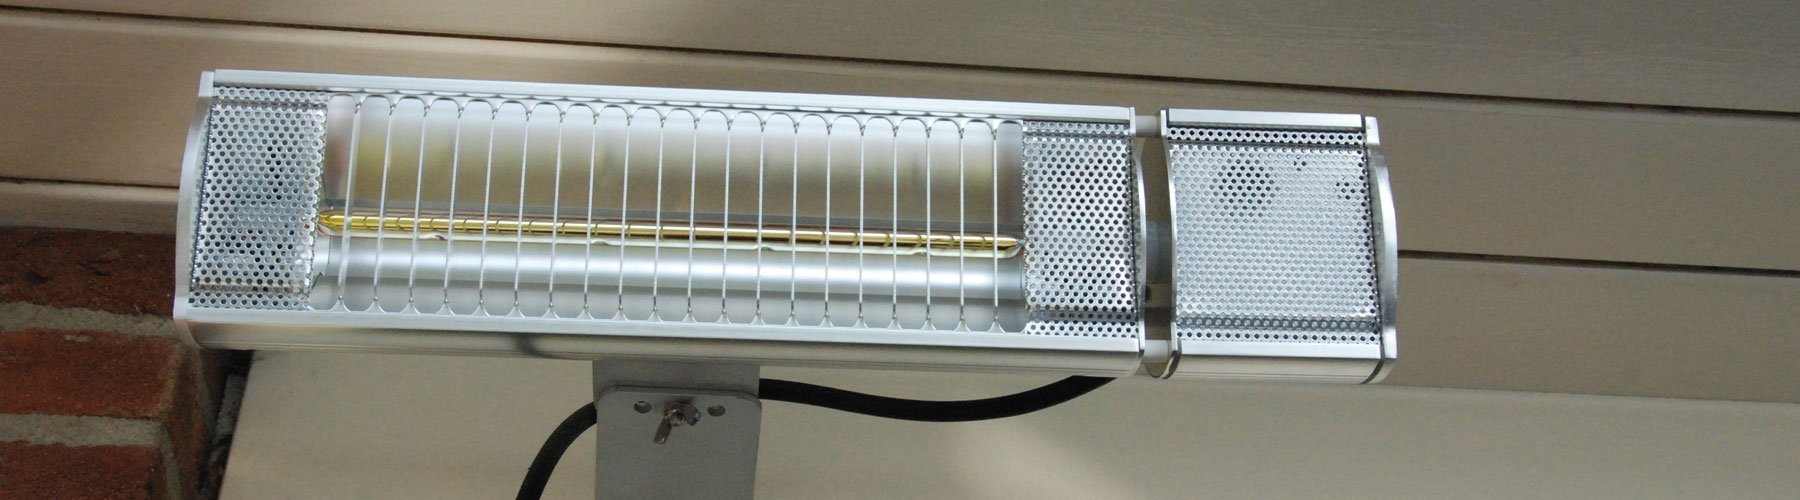 verasol-optie-heater-1.1800x500x1